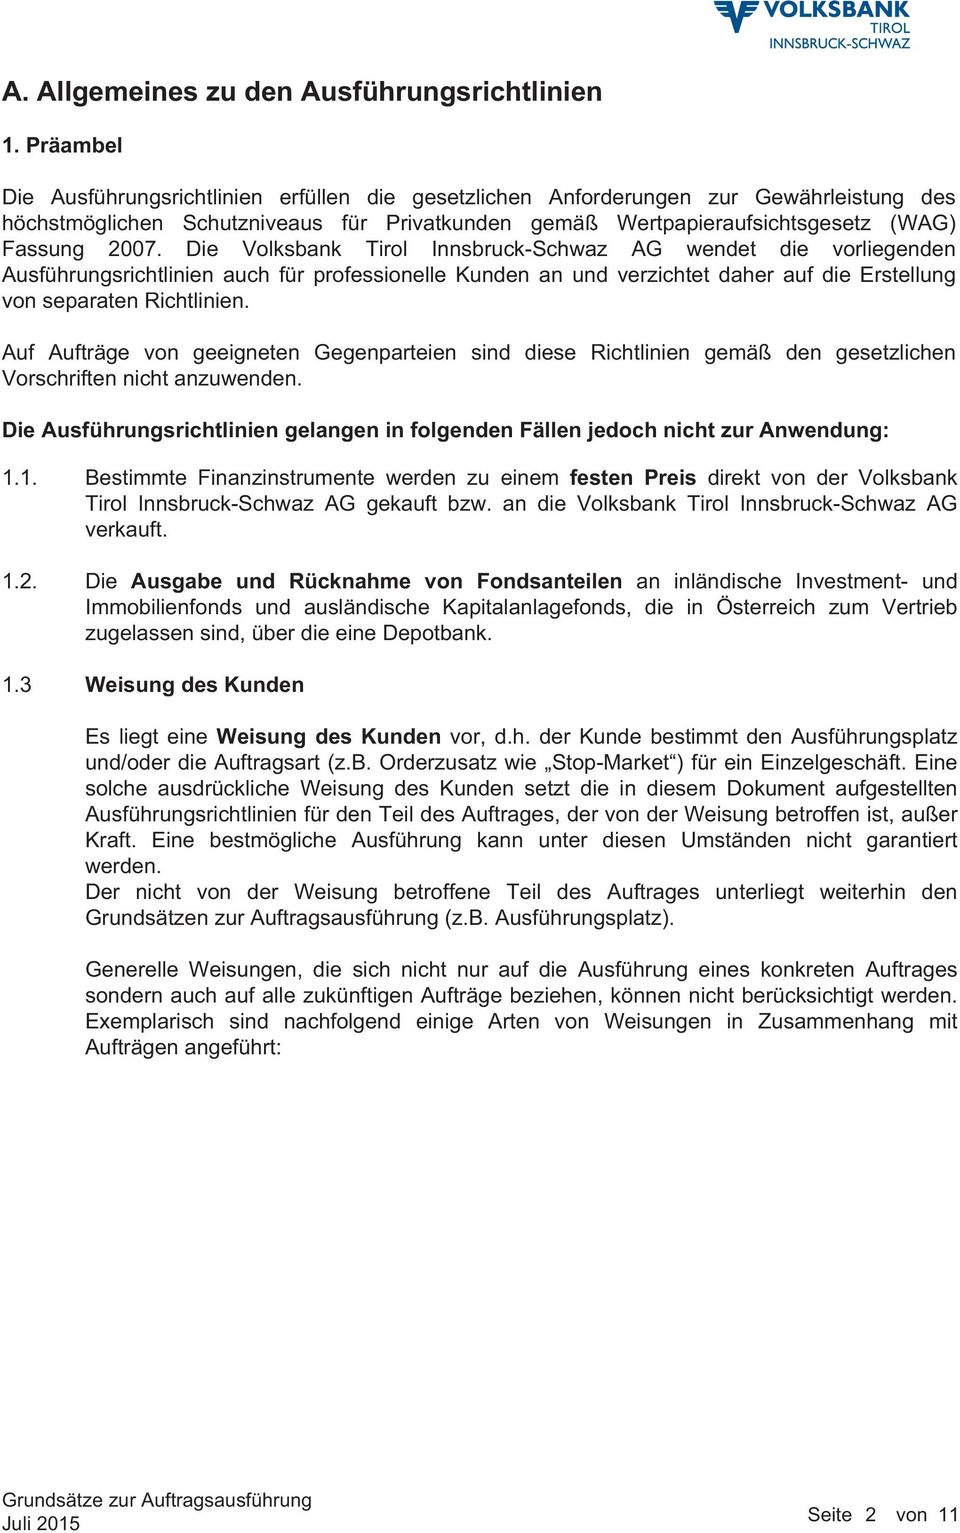 Die Volksbank Tirol Innsbruck-Schwaz AG wendet die vorliegenden Ausführungsrichtlinien auch für professionelle Kunden an und verzichtet daher auf die Erstellung von separaten Richtlinien.